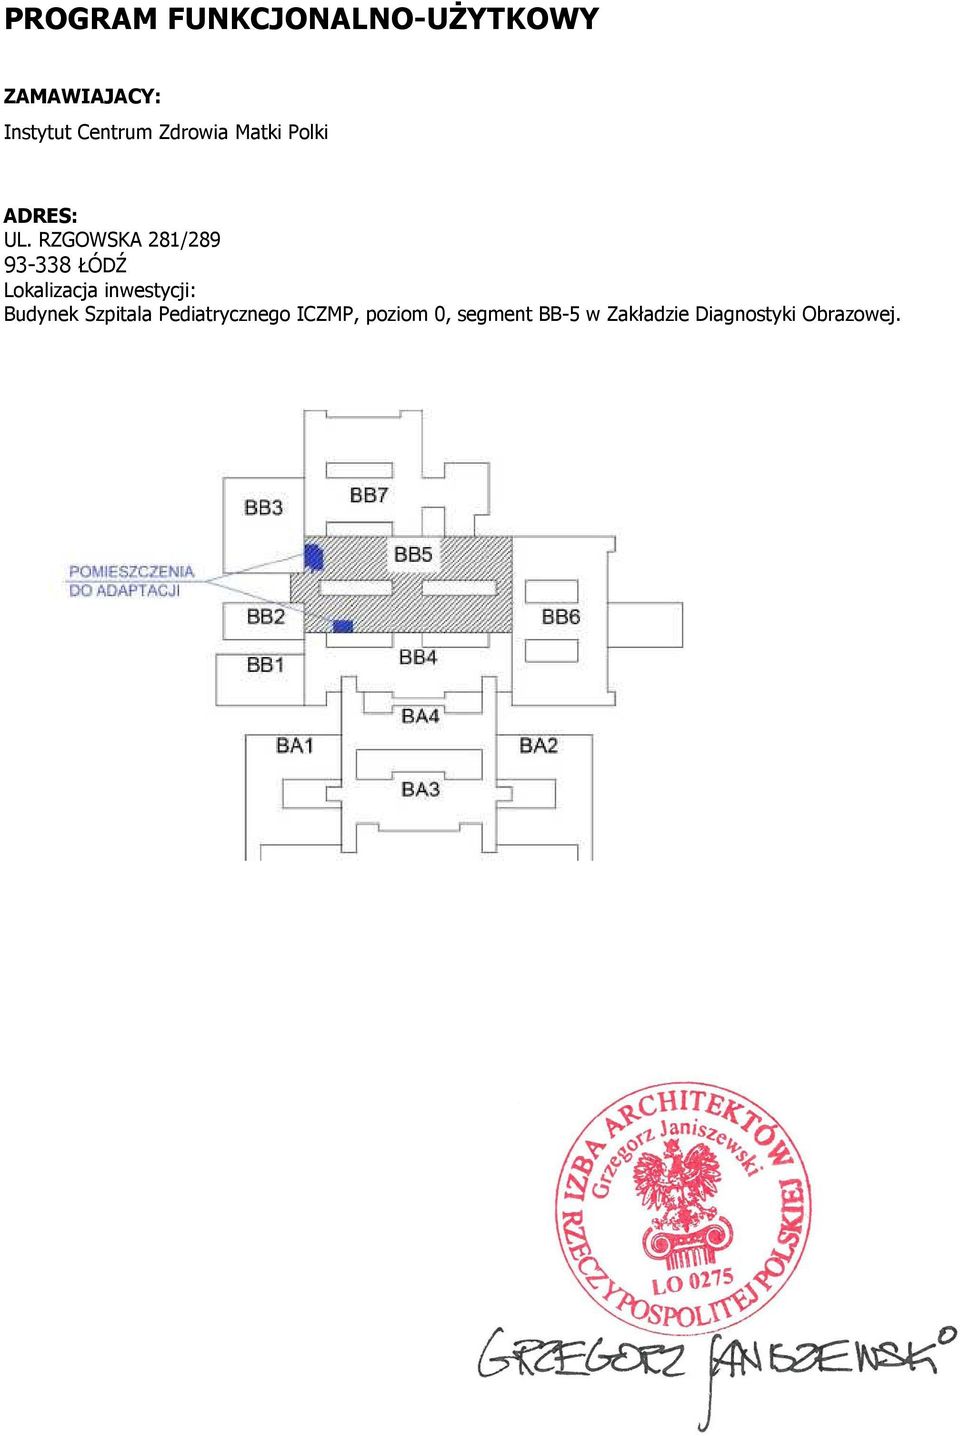 RZGOWSKA 281/289 93-338 ŁÓDŹ Lokalizacja inwestycji: Budynek Szpitala